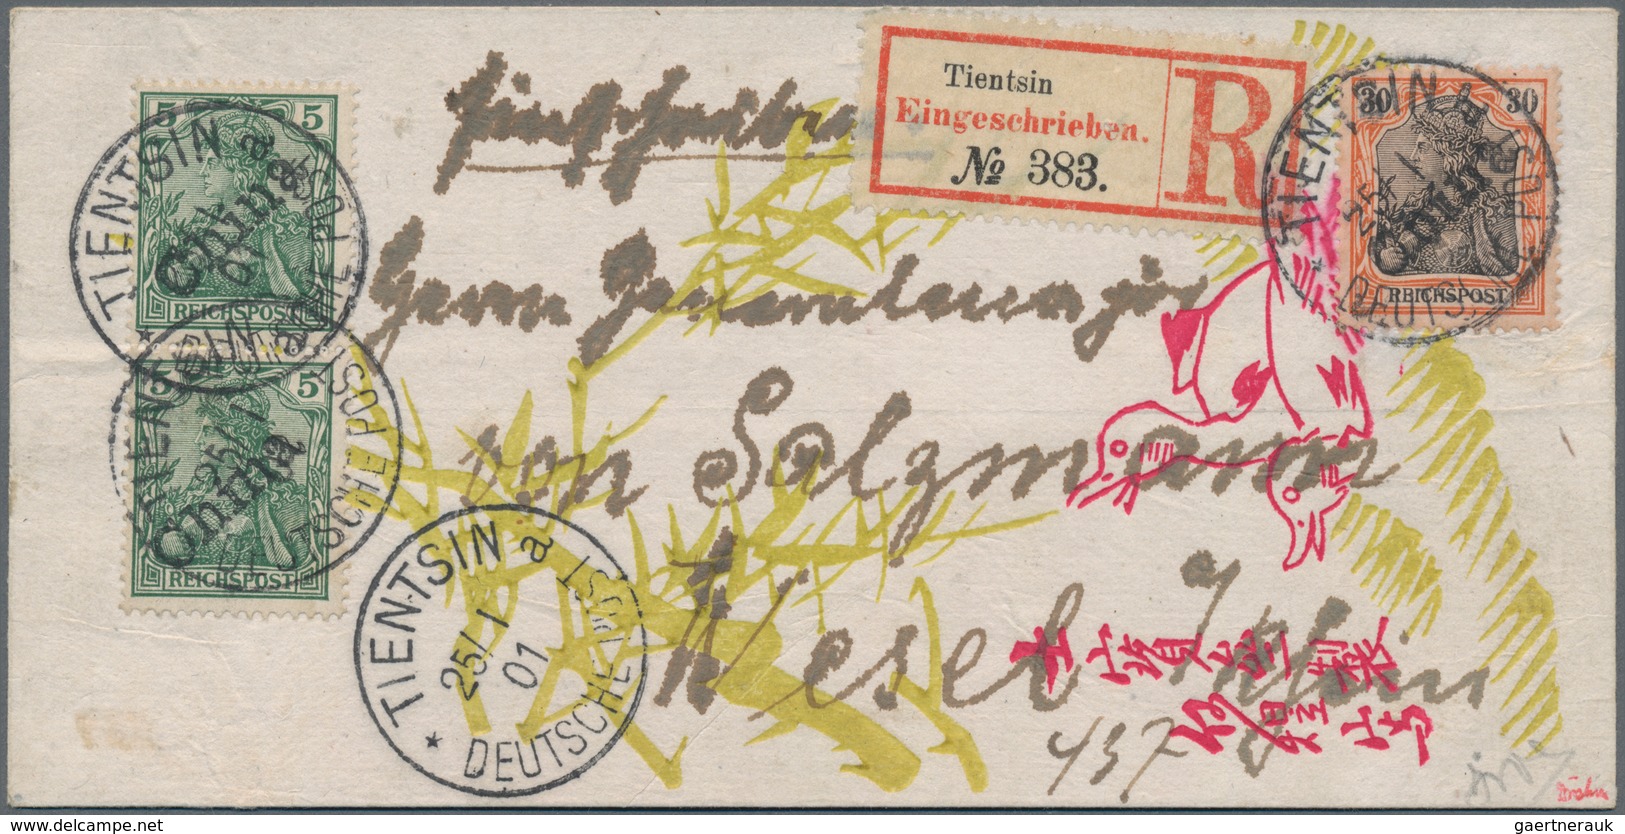 Deutsche Post In China: 1900, 30 Pfg. Germania Orange/schwarz Auf Lachsfarben, Tientsin-Handstempela - China (offices)